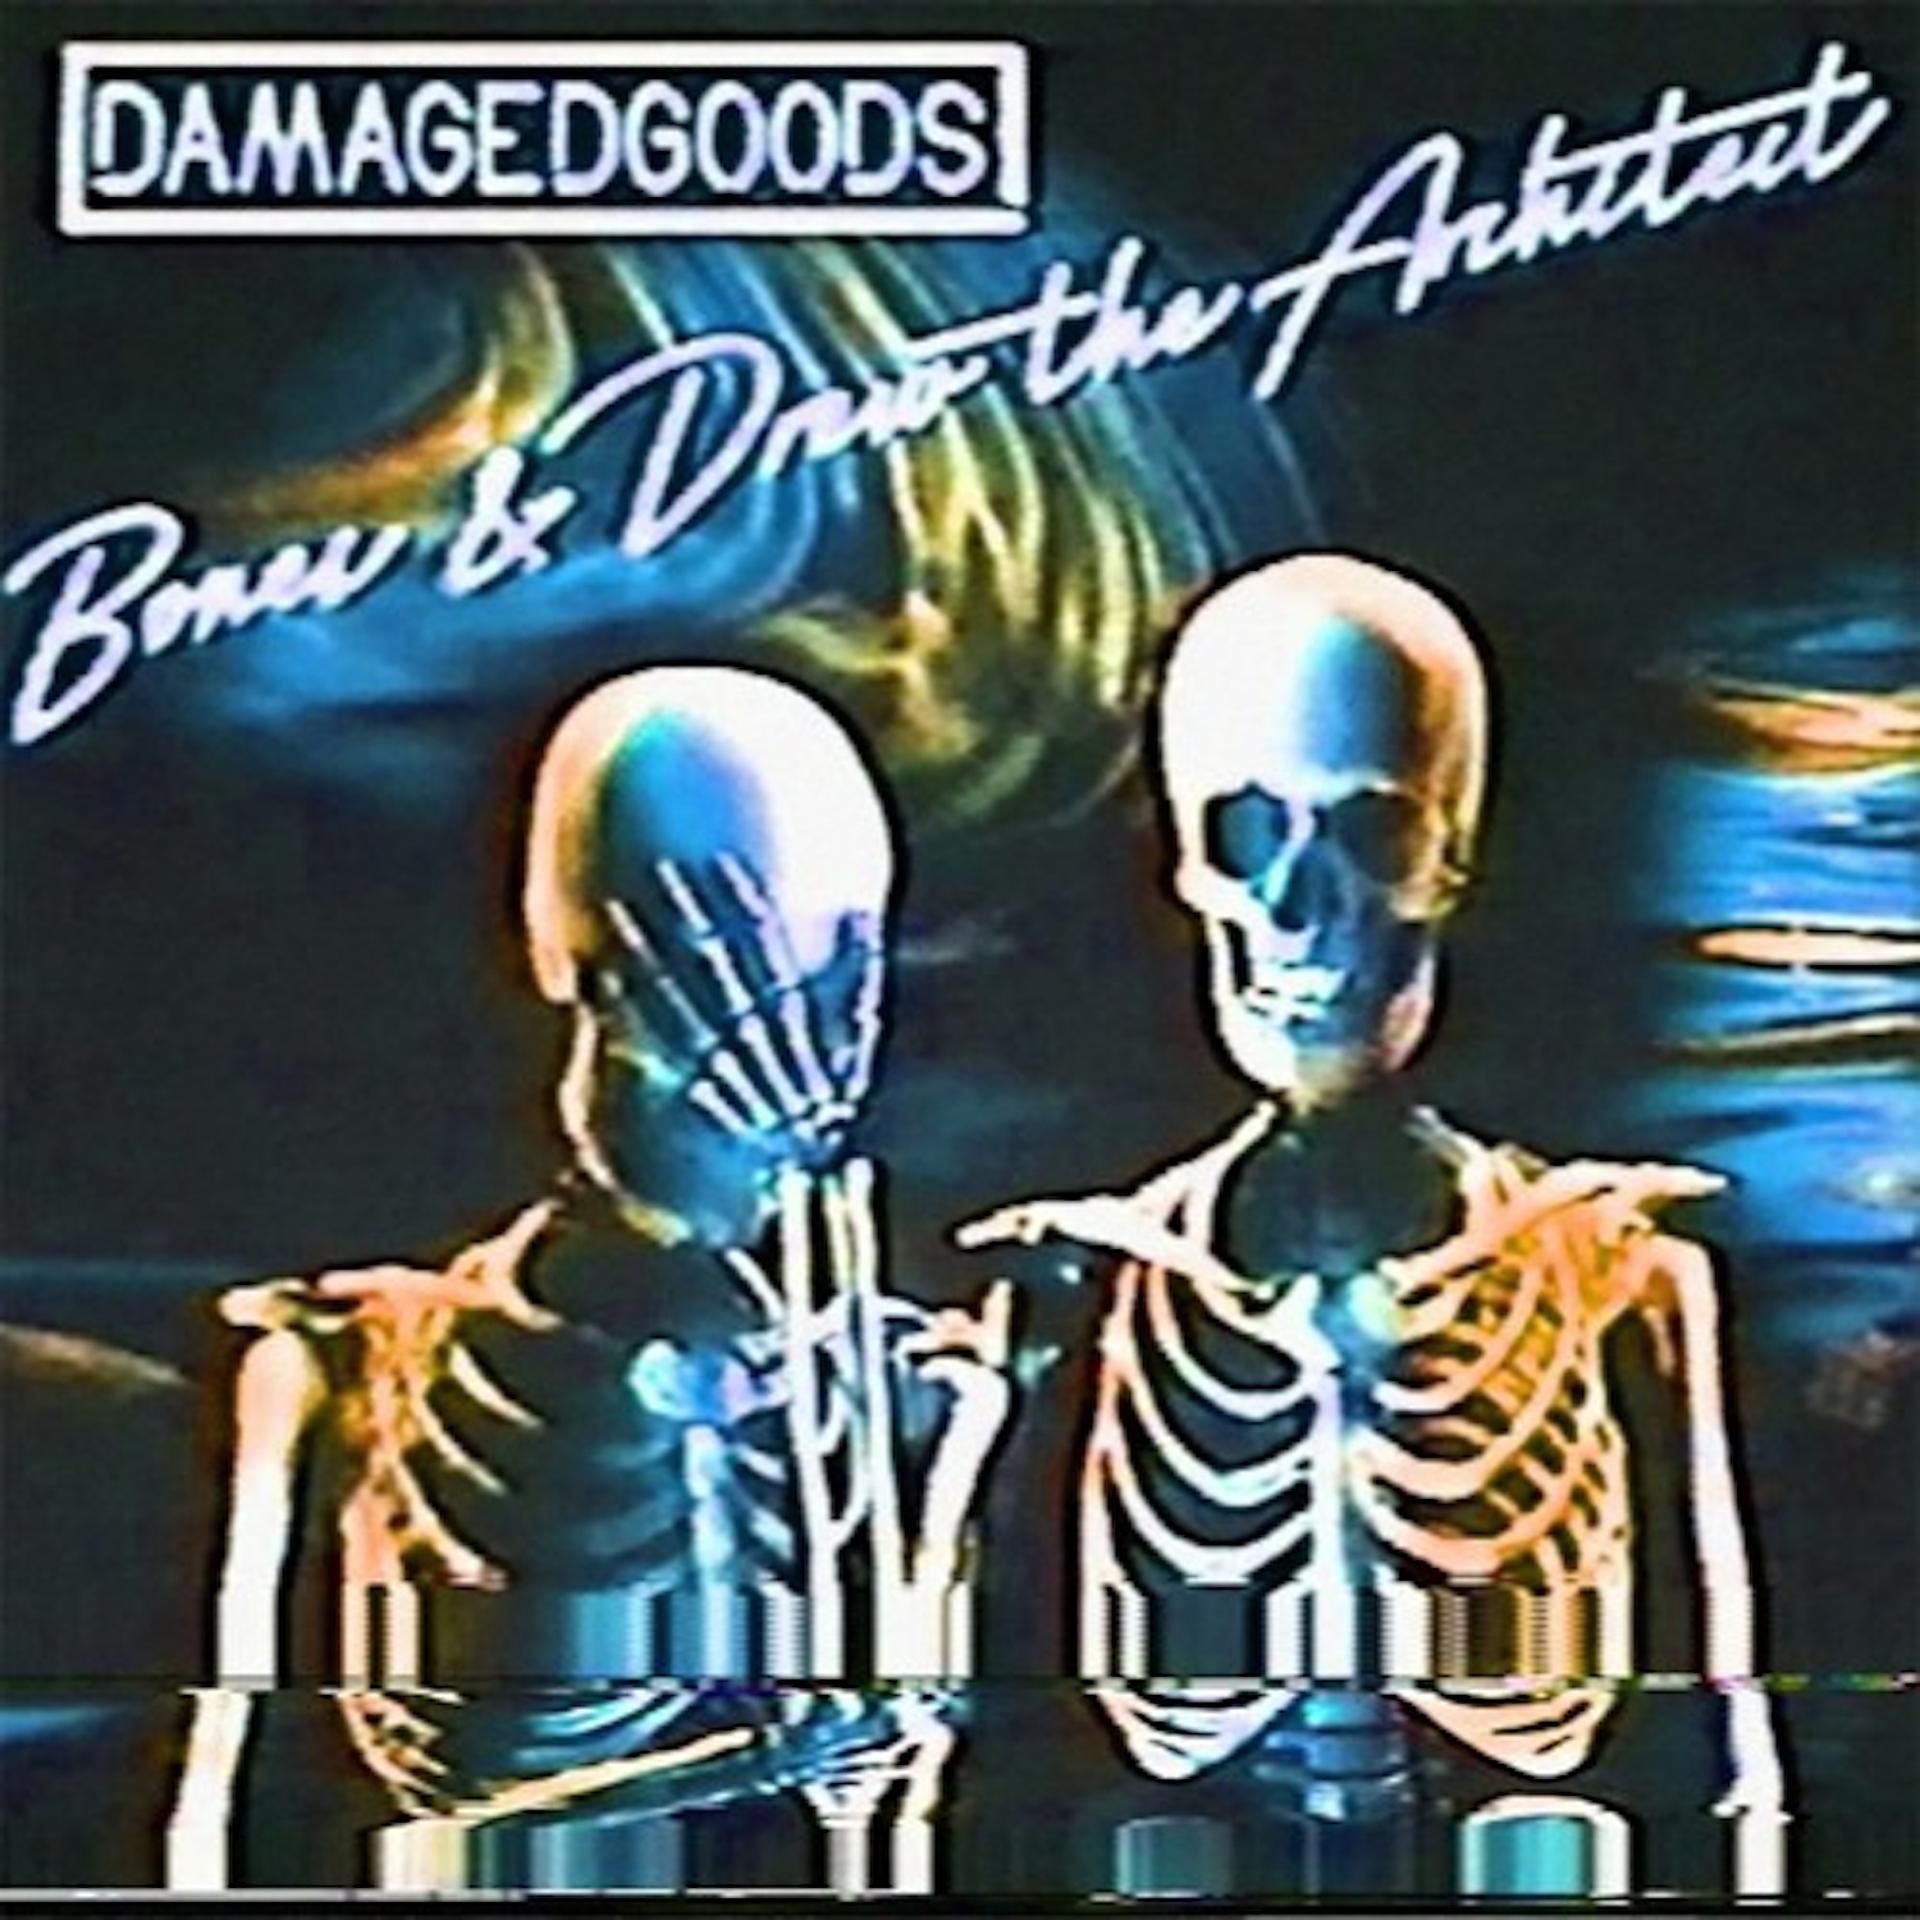 Bones (рэпер). Damaged goods Bones. Bones обложки альбомов. Bones Drew the Architect Damaged goods. Bones ctrl